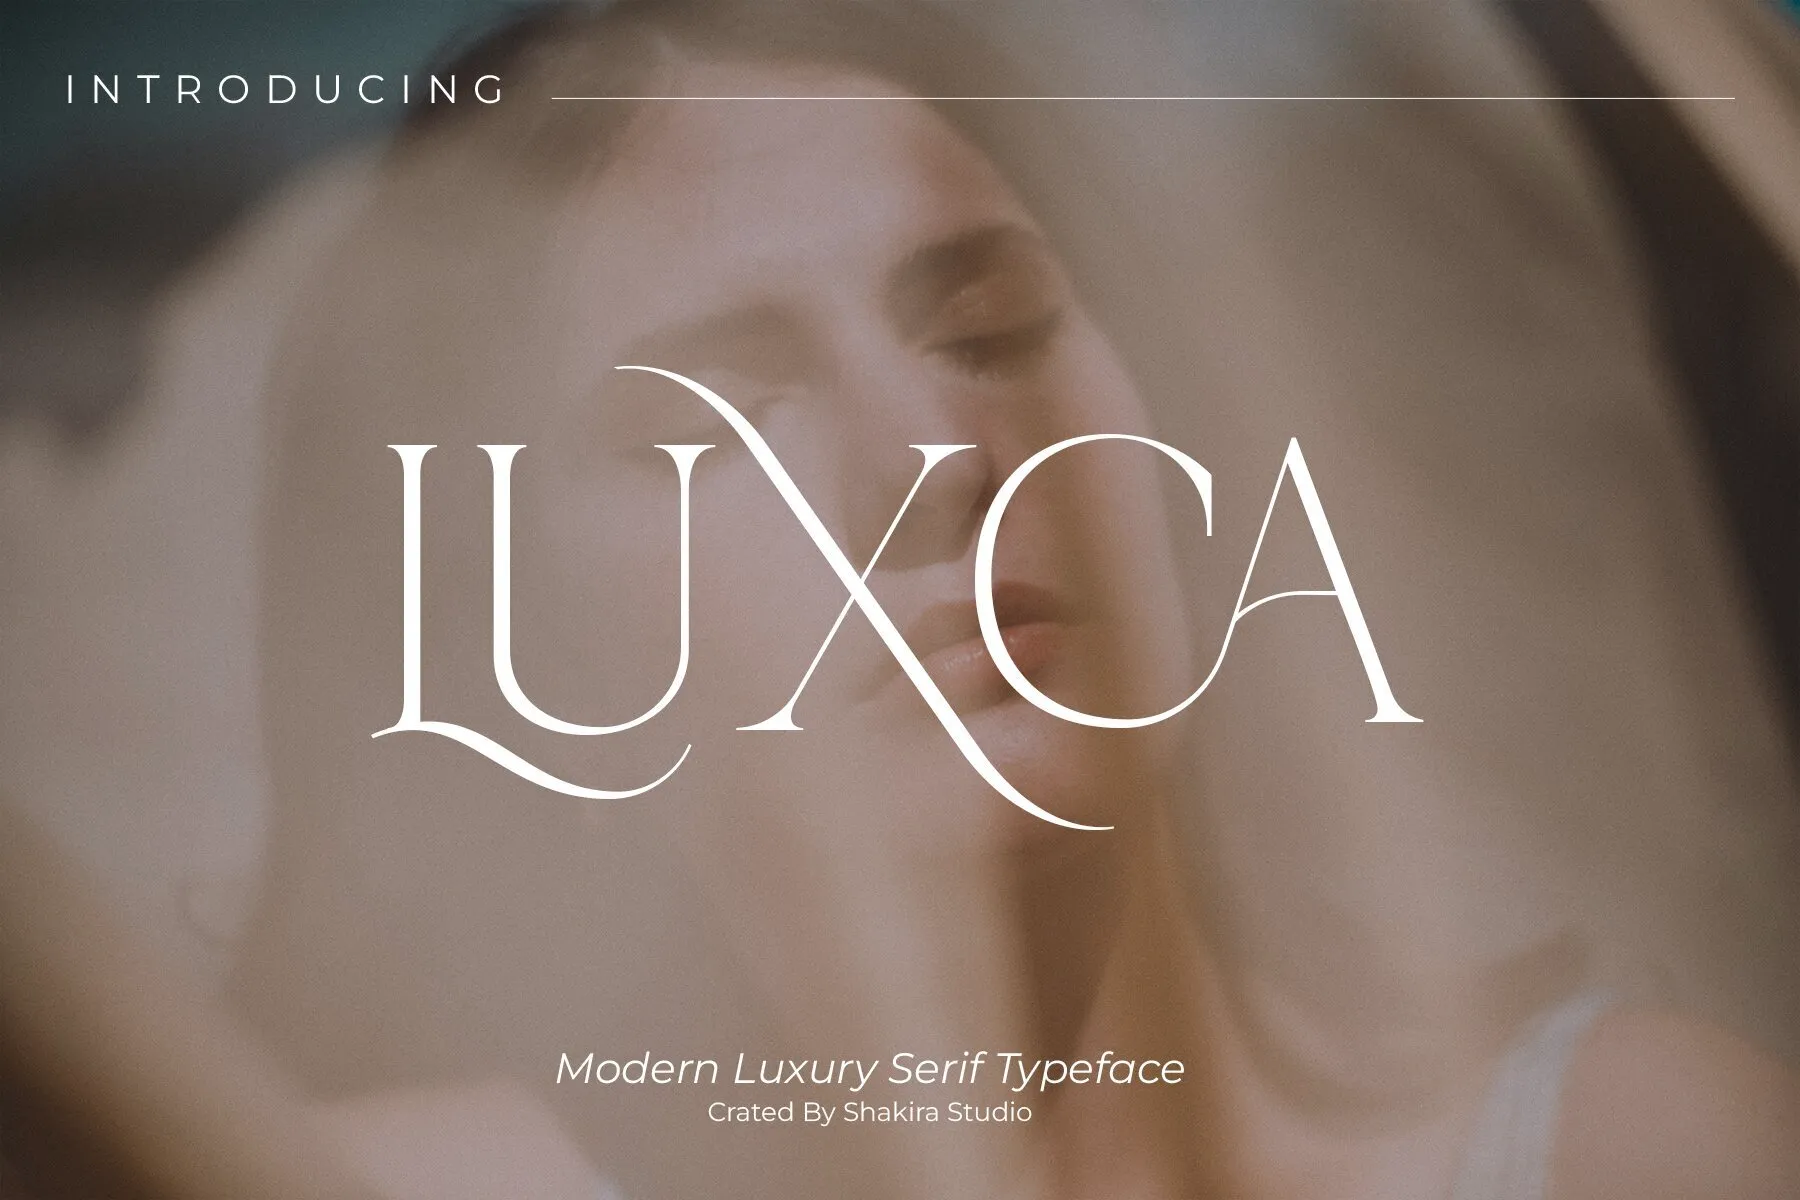 Luxca